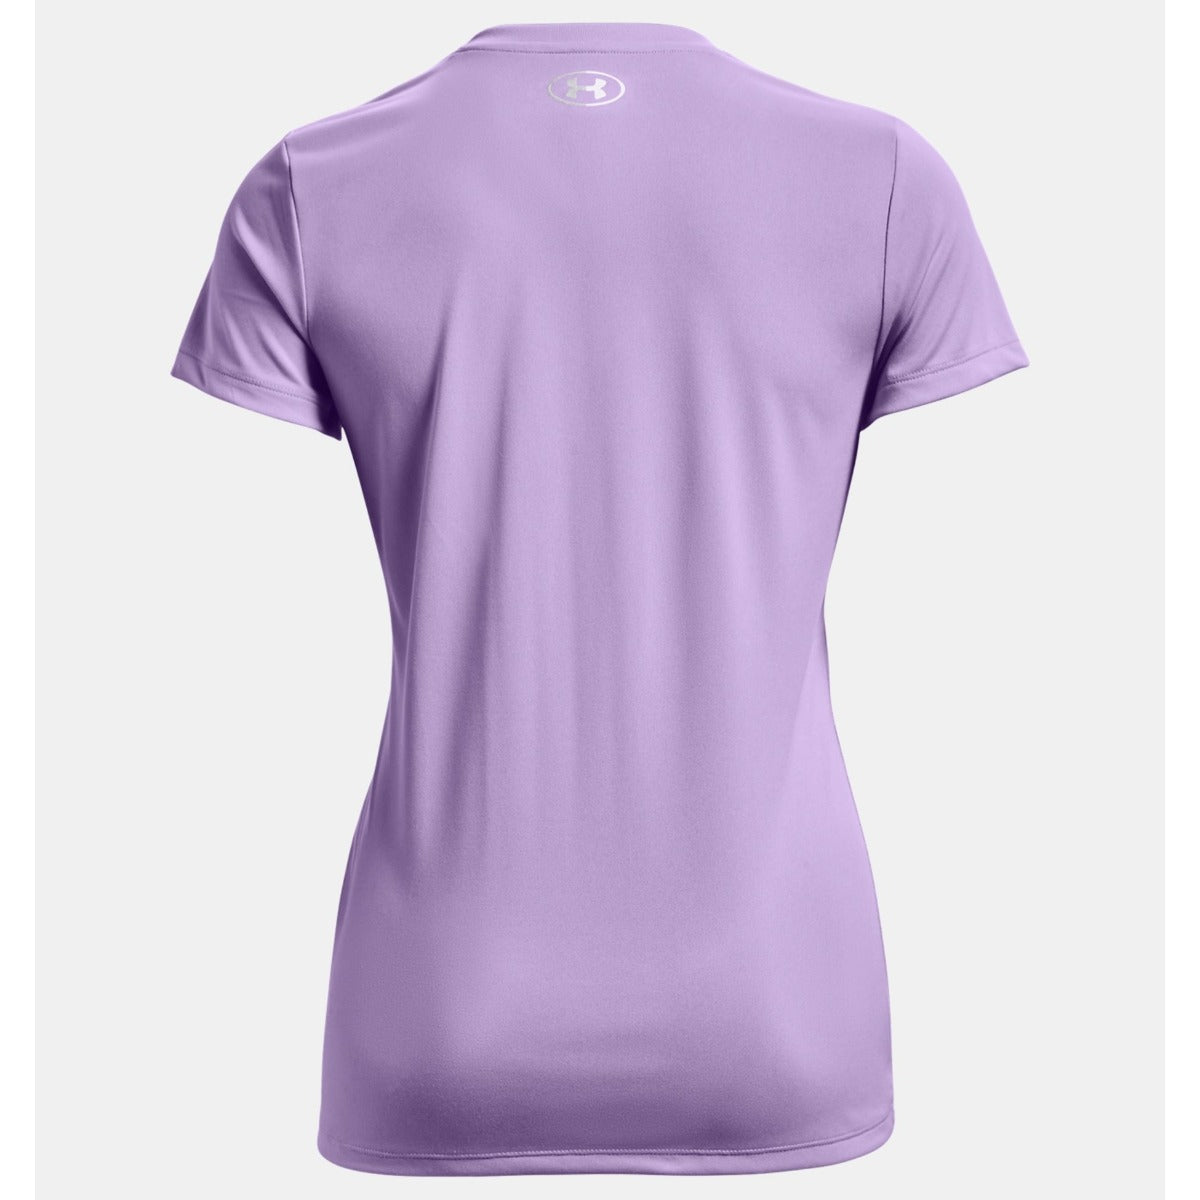 Under Armour Womens Heat Gear LS T-Shirt - Purple, Michael Murphy Sports, Donegal